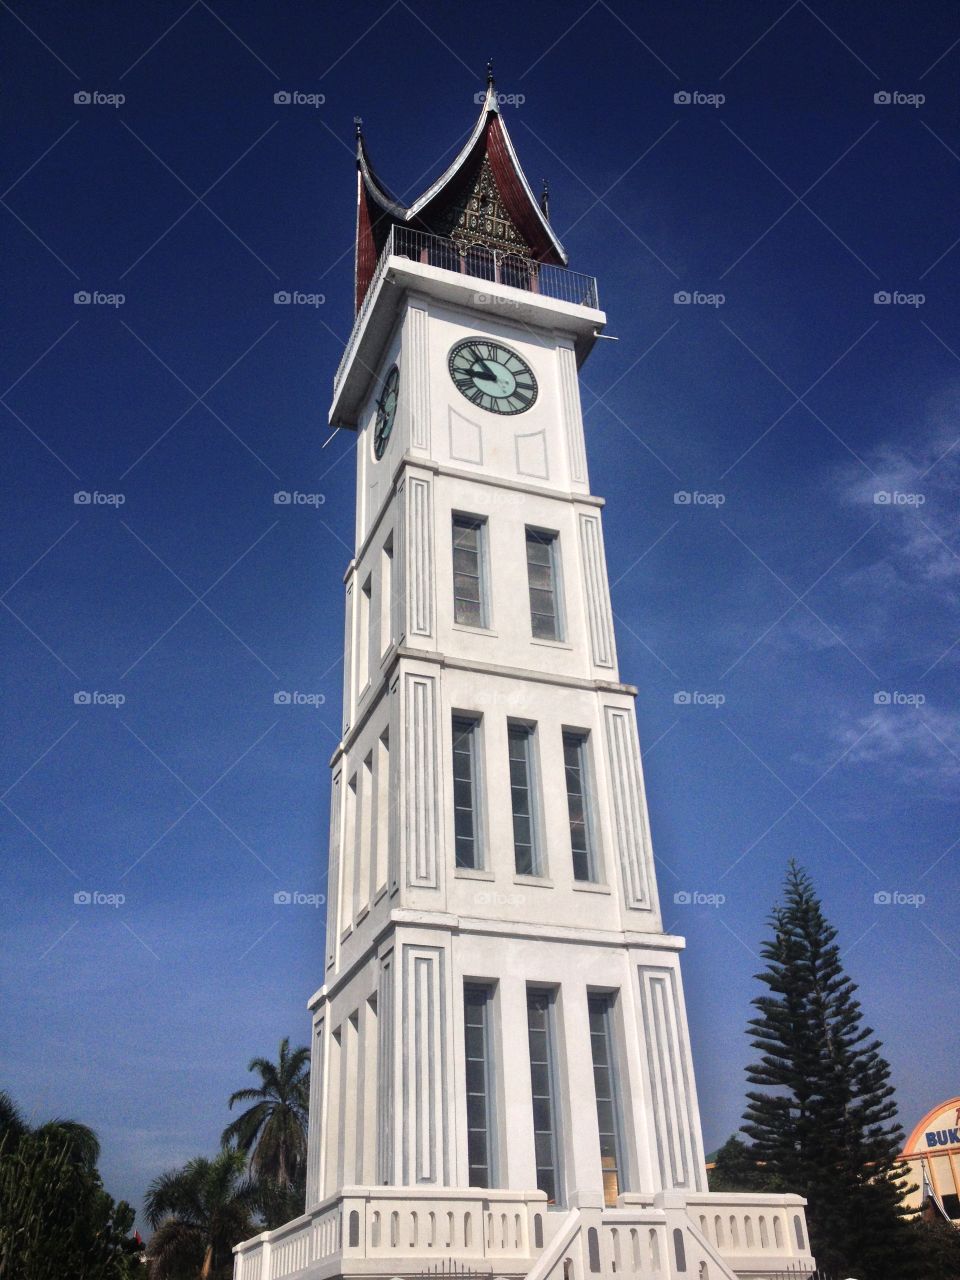 Jam Gadang. Jam Gadang Bukit Tinggi Indonesia